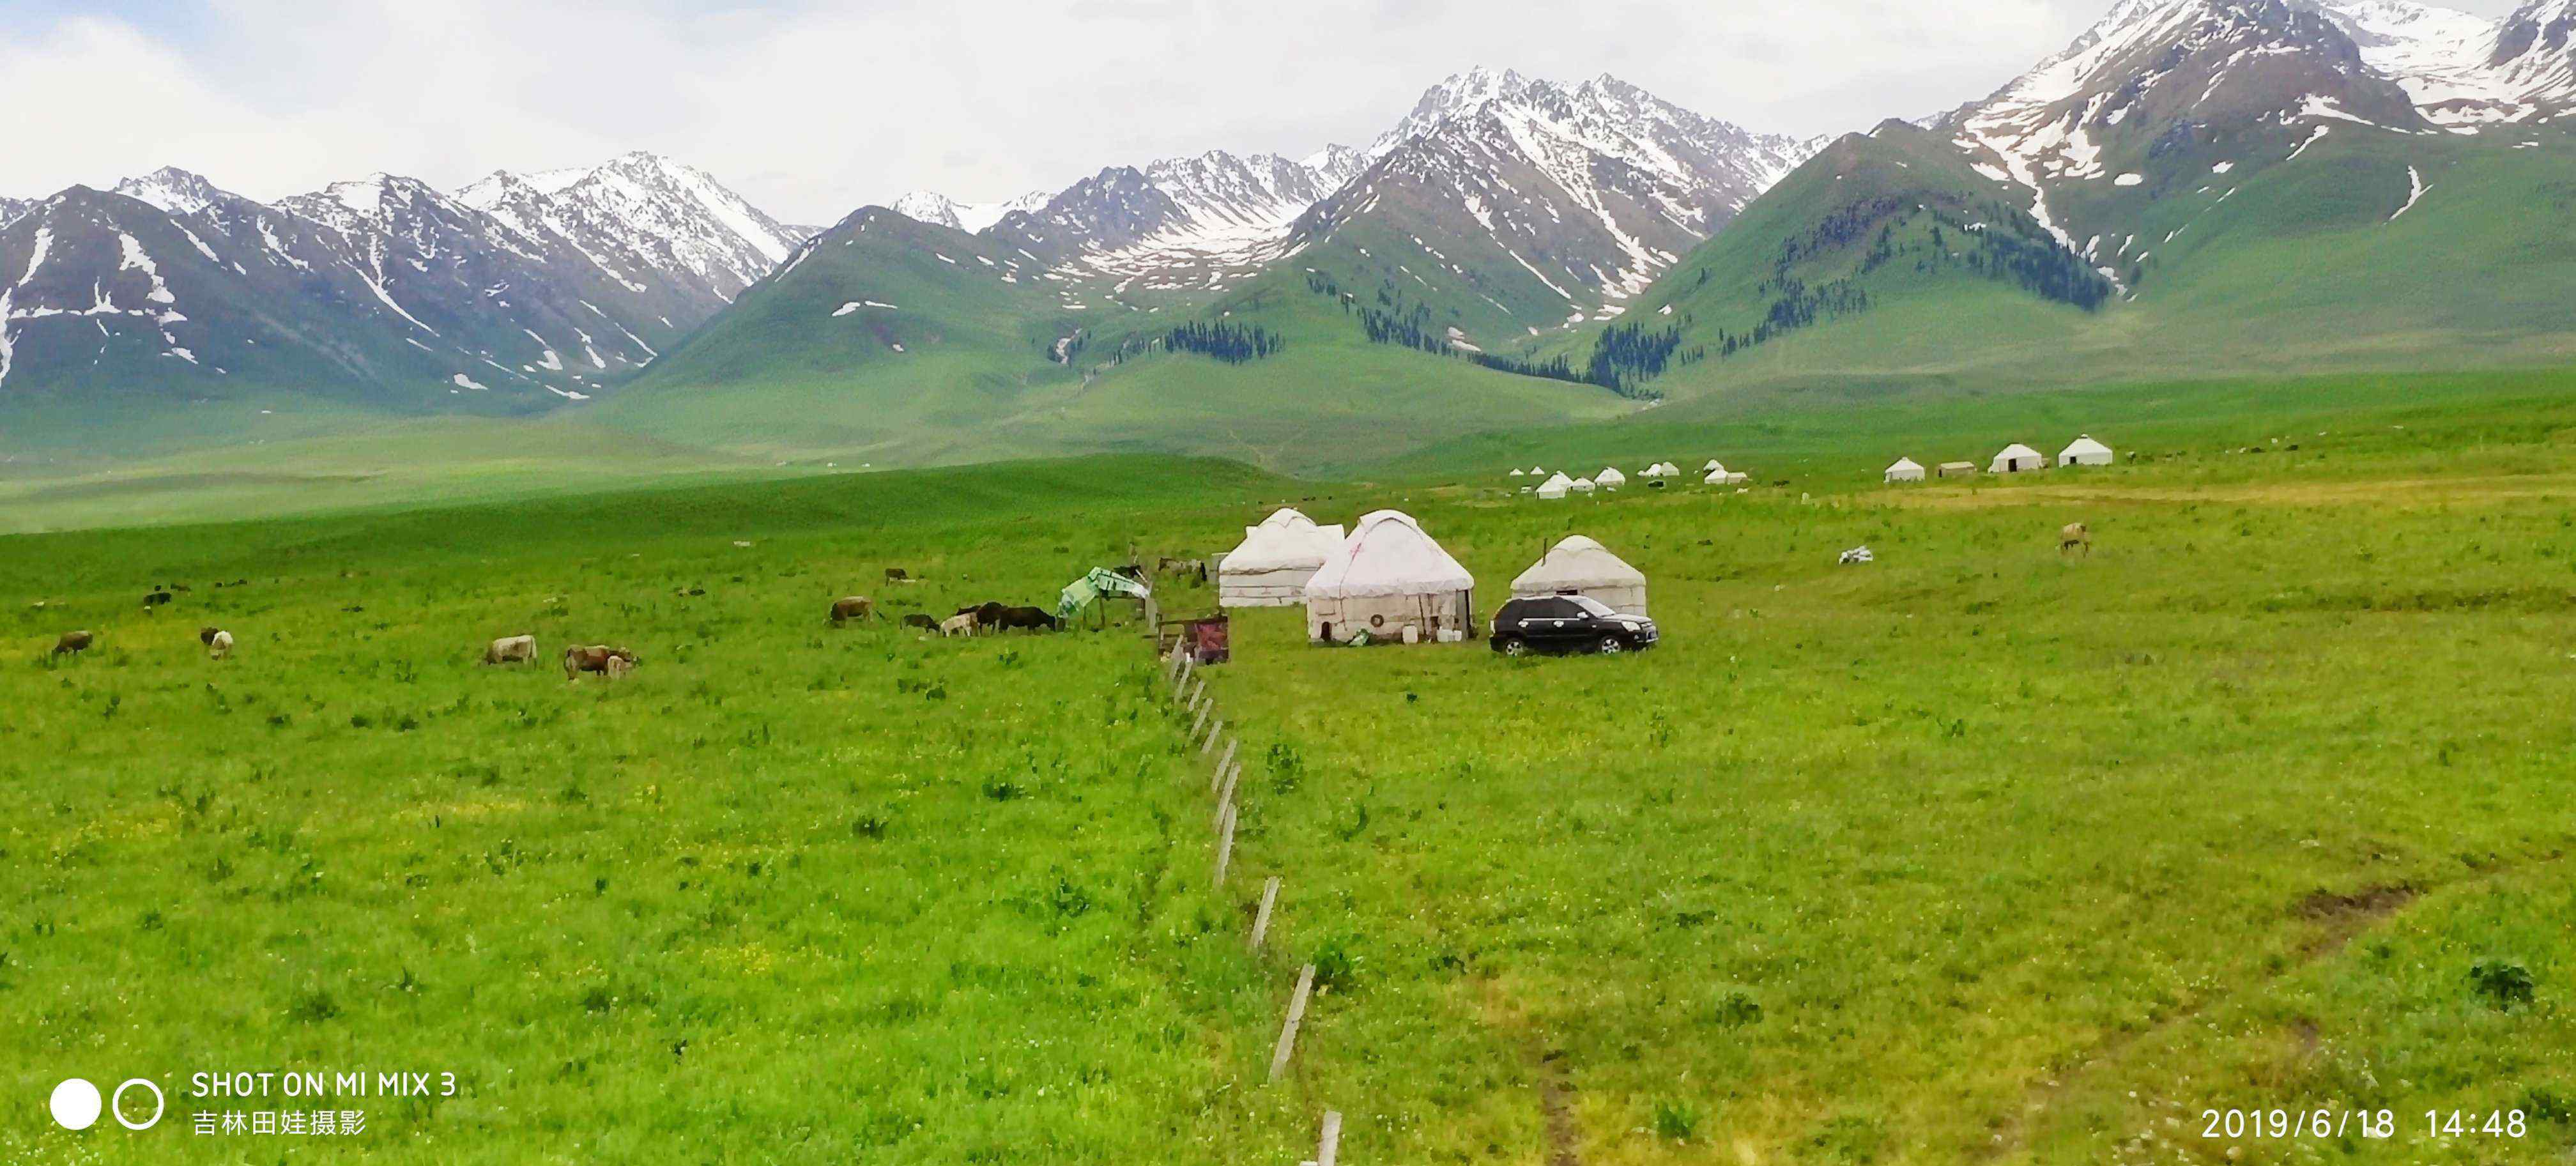 伊犁那拉提草原 新疆伊犁-那拉提空中草原